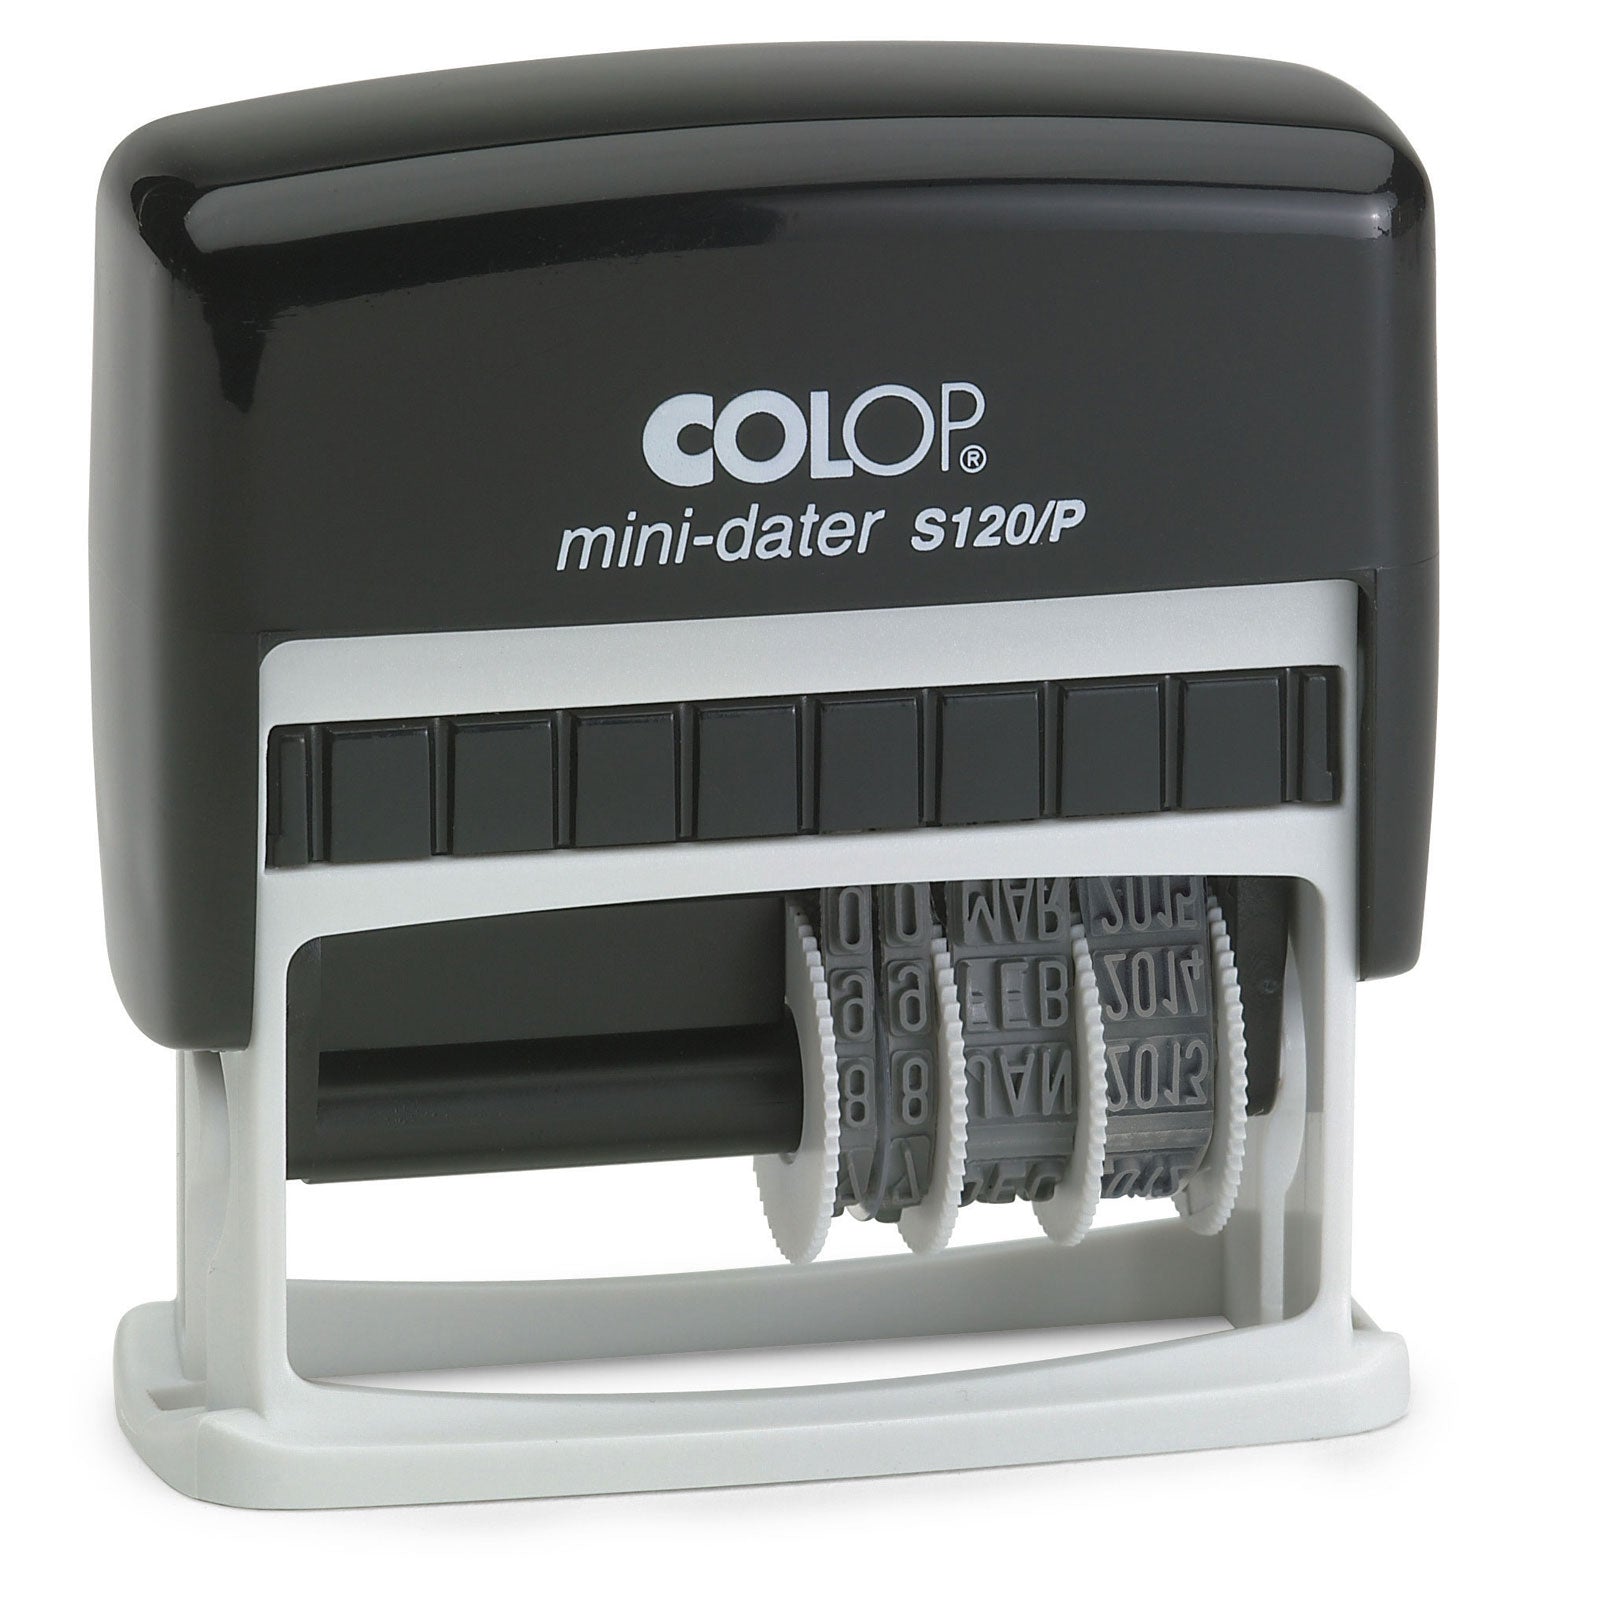 Colop Mini Dater S120/P - 25 x 10mm - 4mm Date